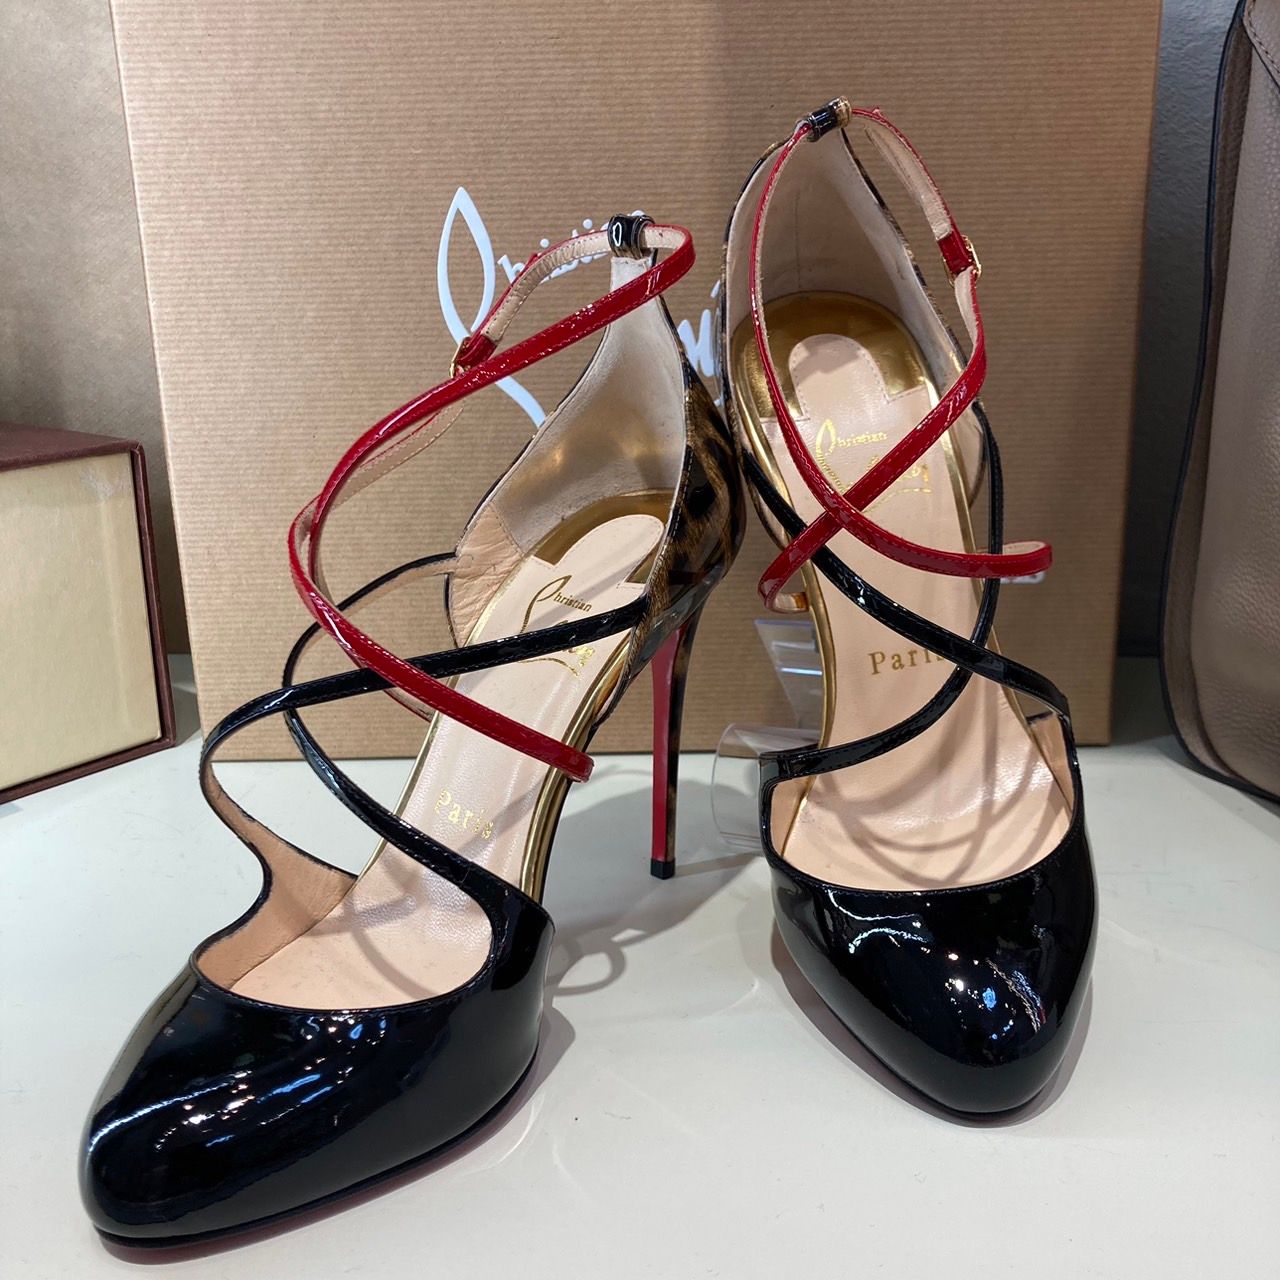 【全額返金保証・送料無料】ルブタンのパンプス・正規品・美品・レオパード・豹柄Rozenaの靴一覧